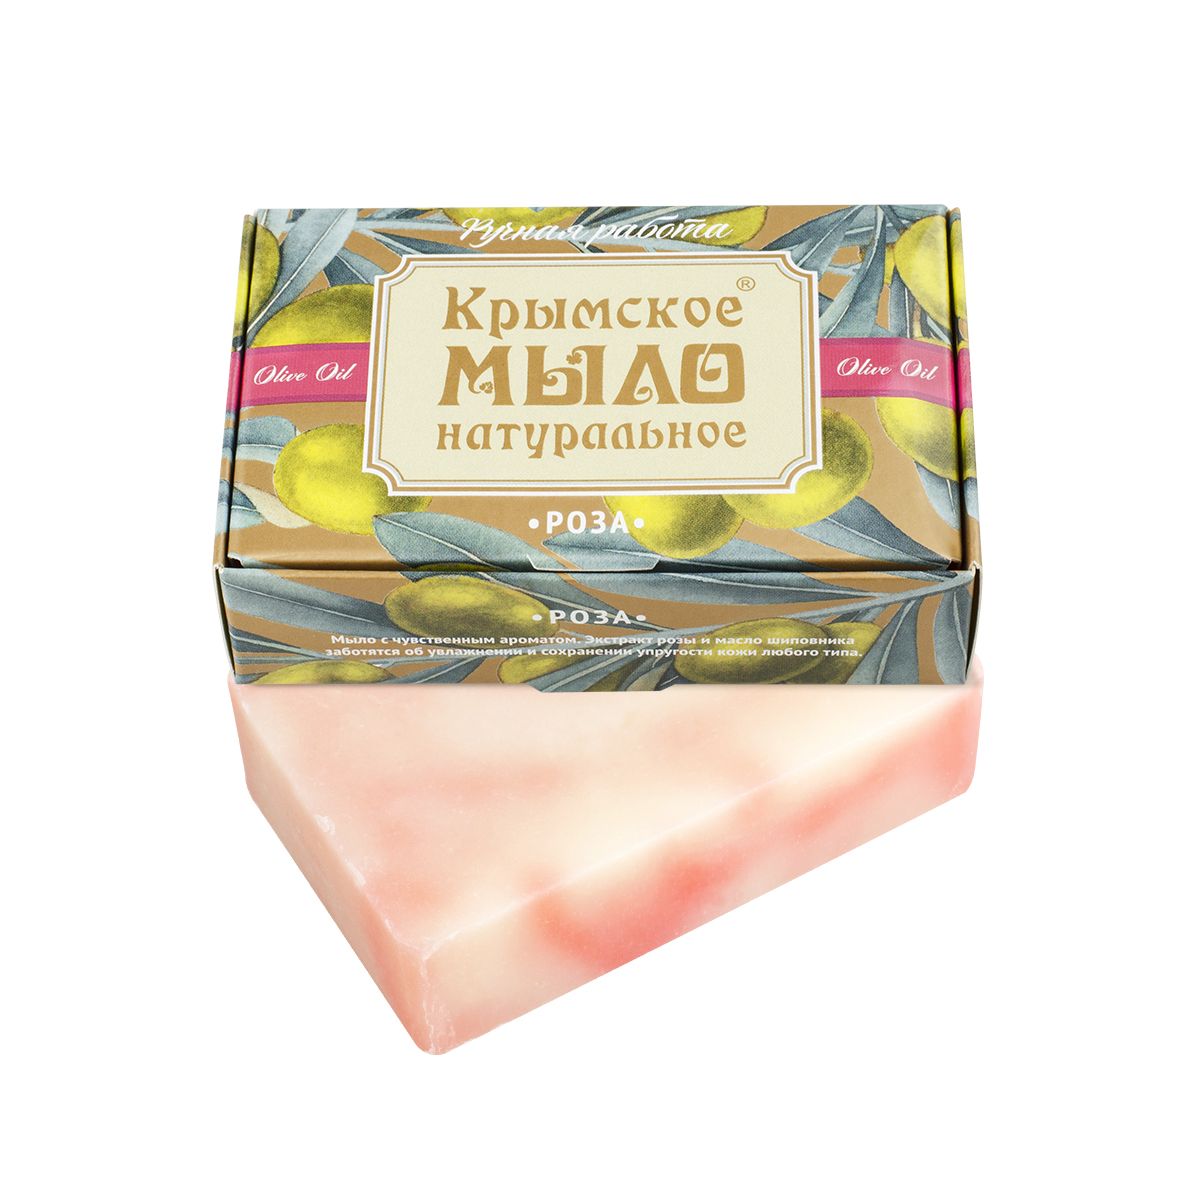 Крымское натуральное мыло на оливковом масле роза,100г купить в онлайн экомаркете